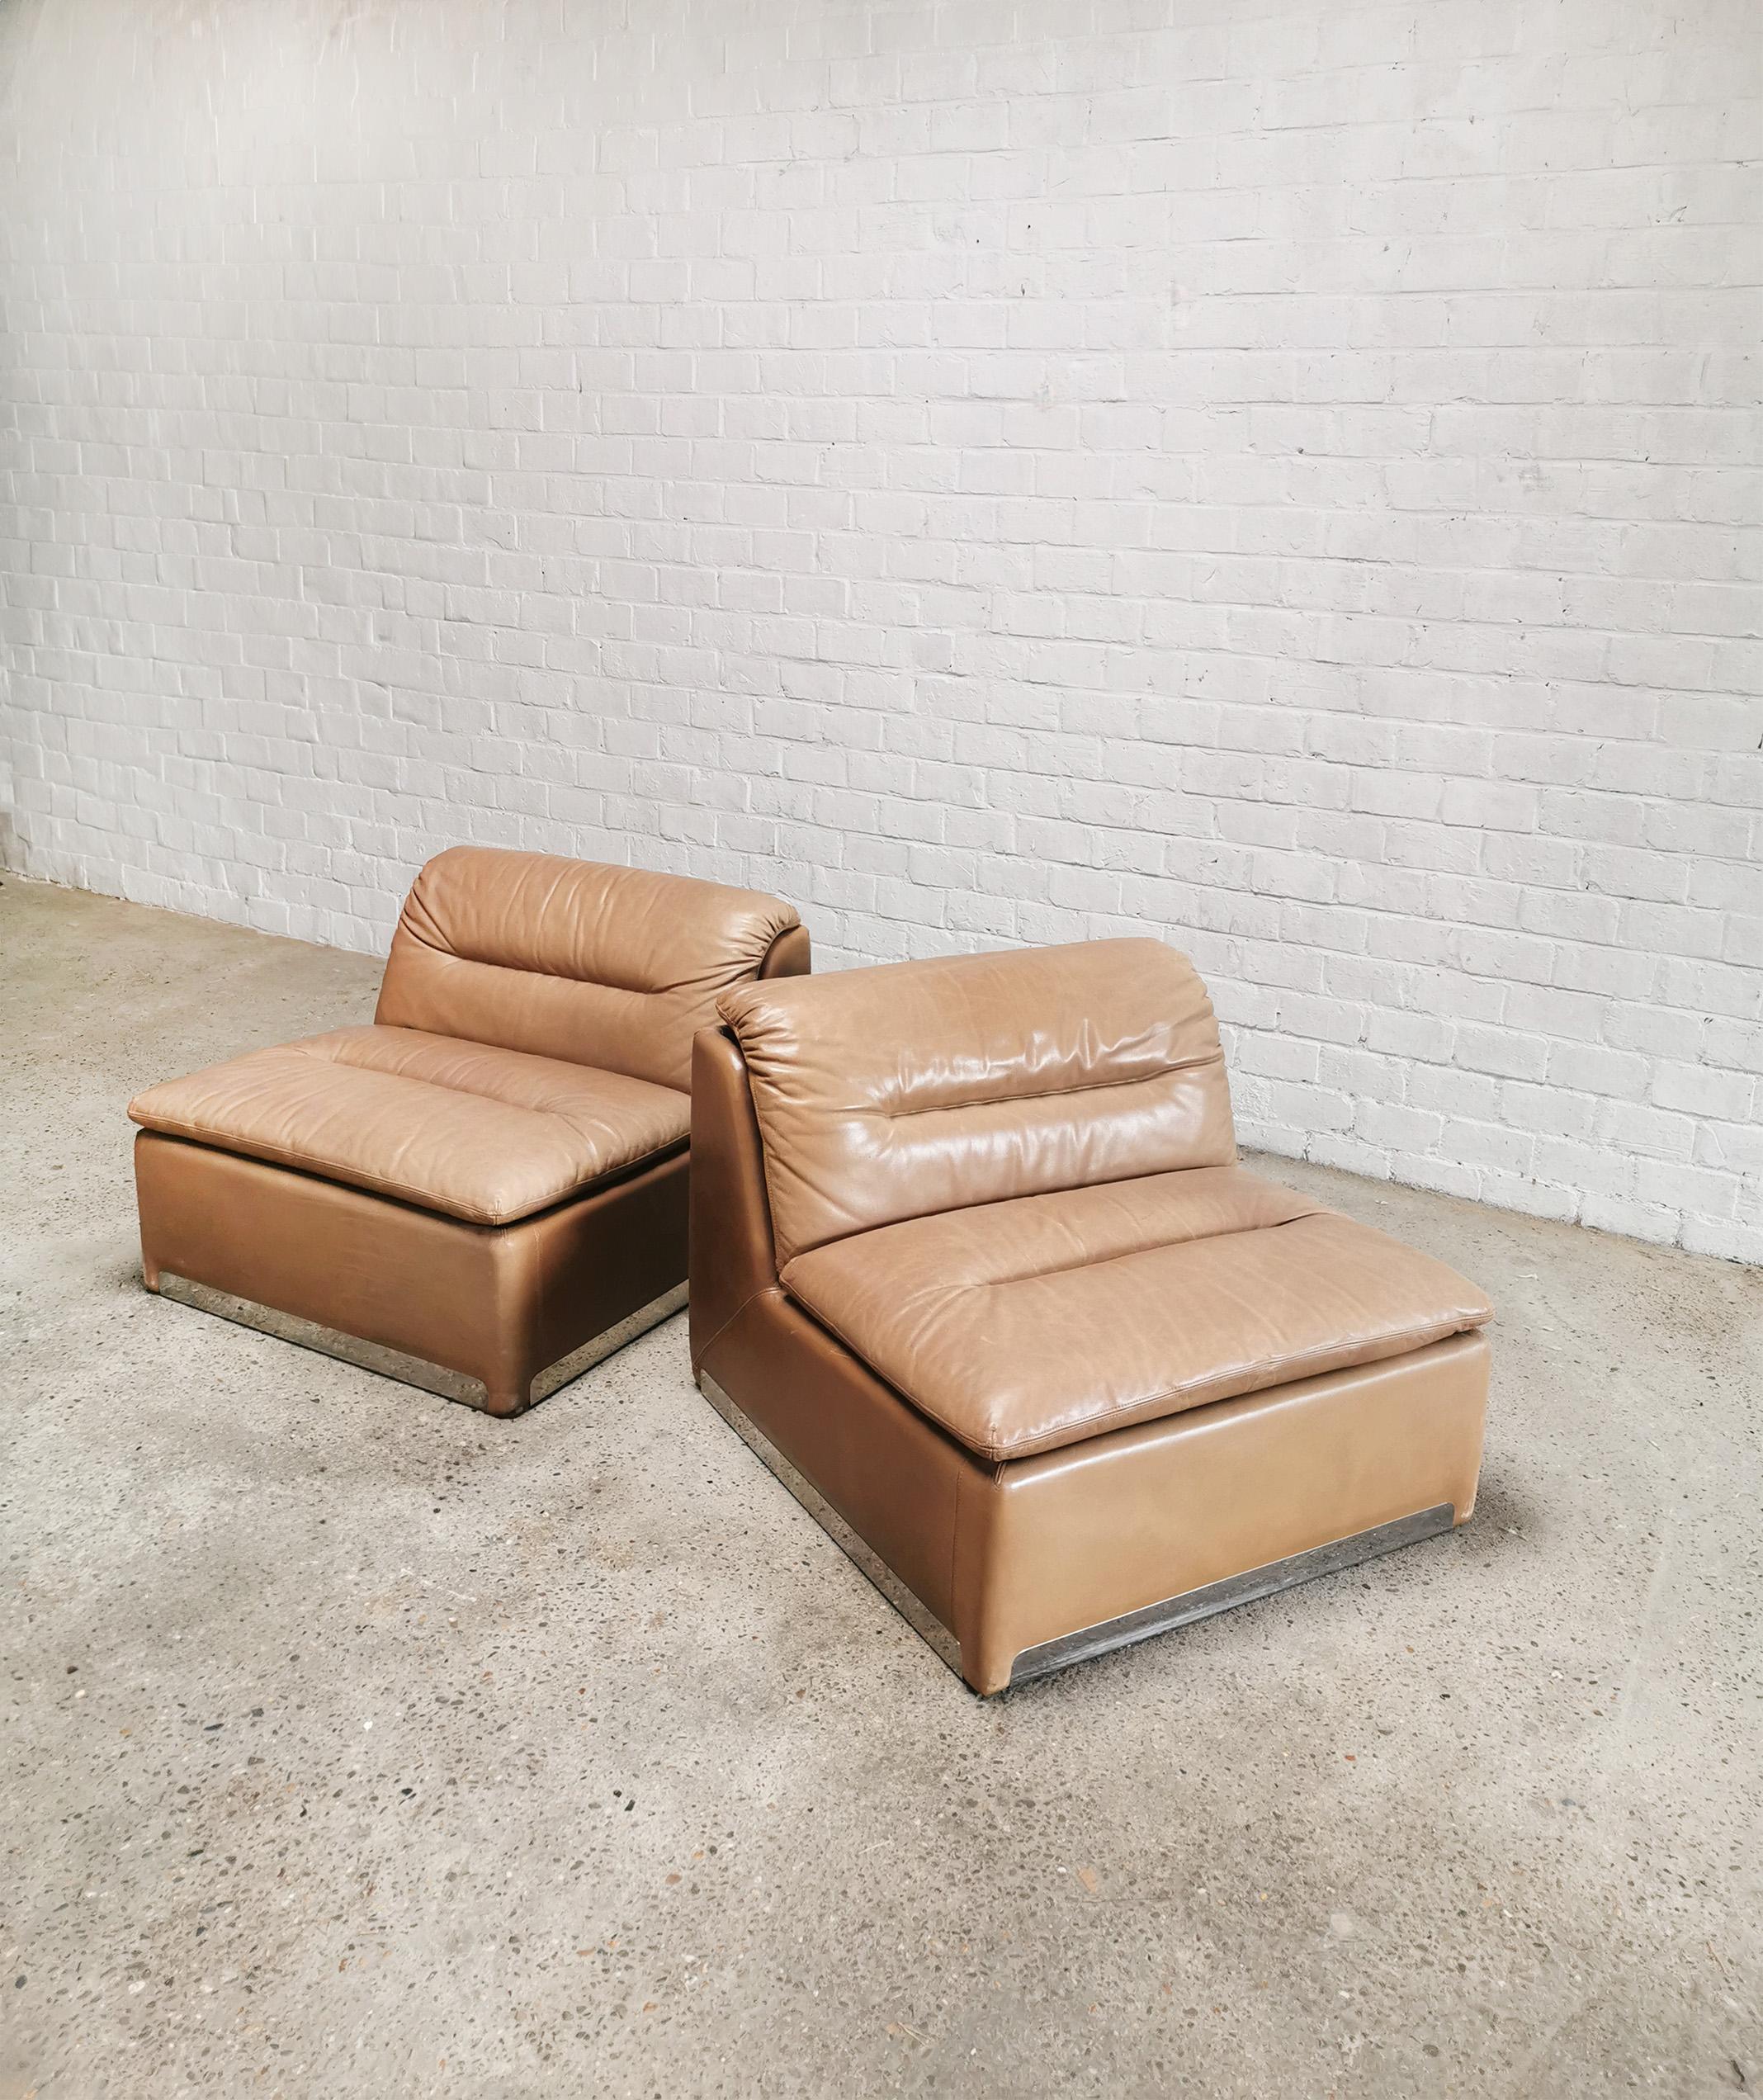 Ein Paar 1970er Saporiti 'P10' modulare Lounge-Stühle, gepolstert mit dem originalen reichen Cognac-Leder. Diese Loungesessel haben ein schweres, gepolstertes Stahlgestell mit einem L-förmigen Sitz und ein armloses, modulares Design. Ihr